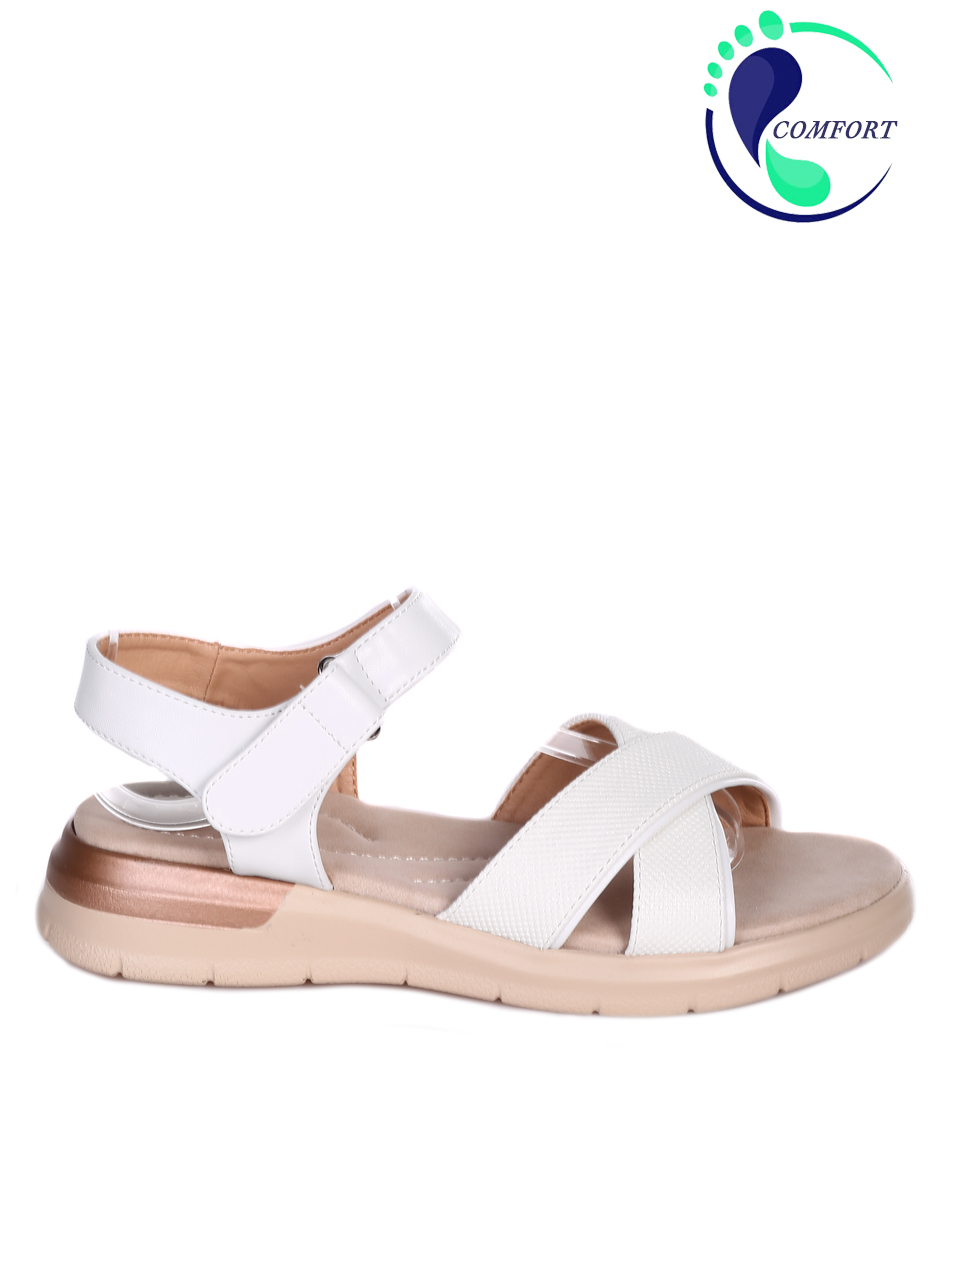 Ежедневни дамски комфортни сандали в бяло 4H-23119 white